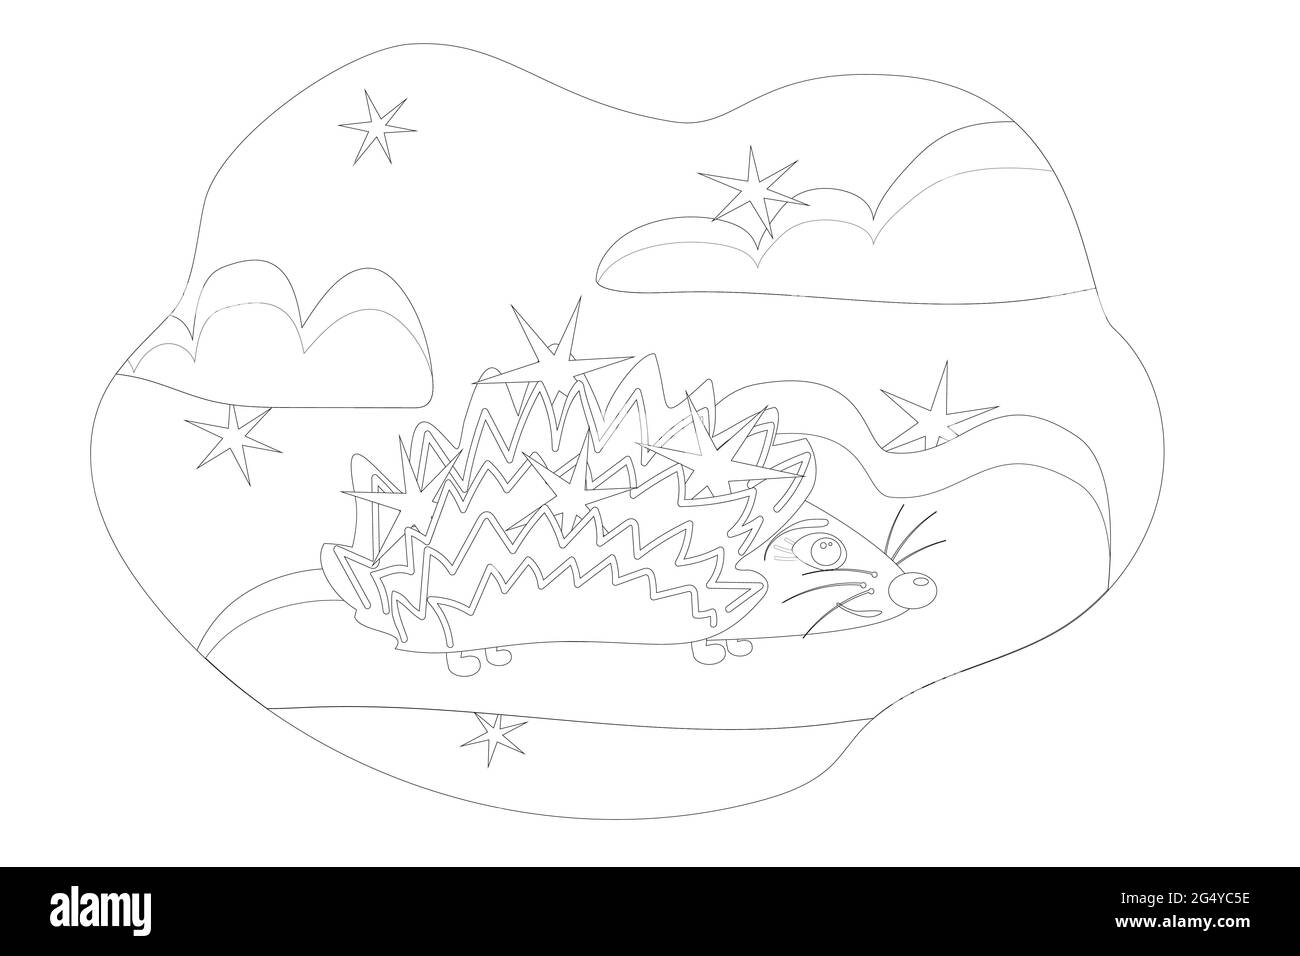 les enfants colorent un hérisson joyeux avec des étoiles sur son dos se dresse sur un nuage contre le fond du ciel avec des étoiles Illustration de Vecteur